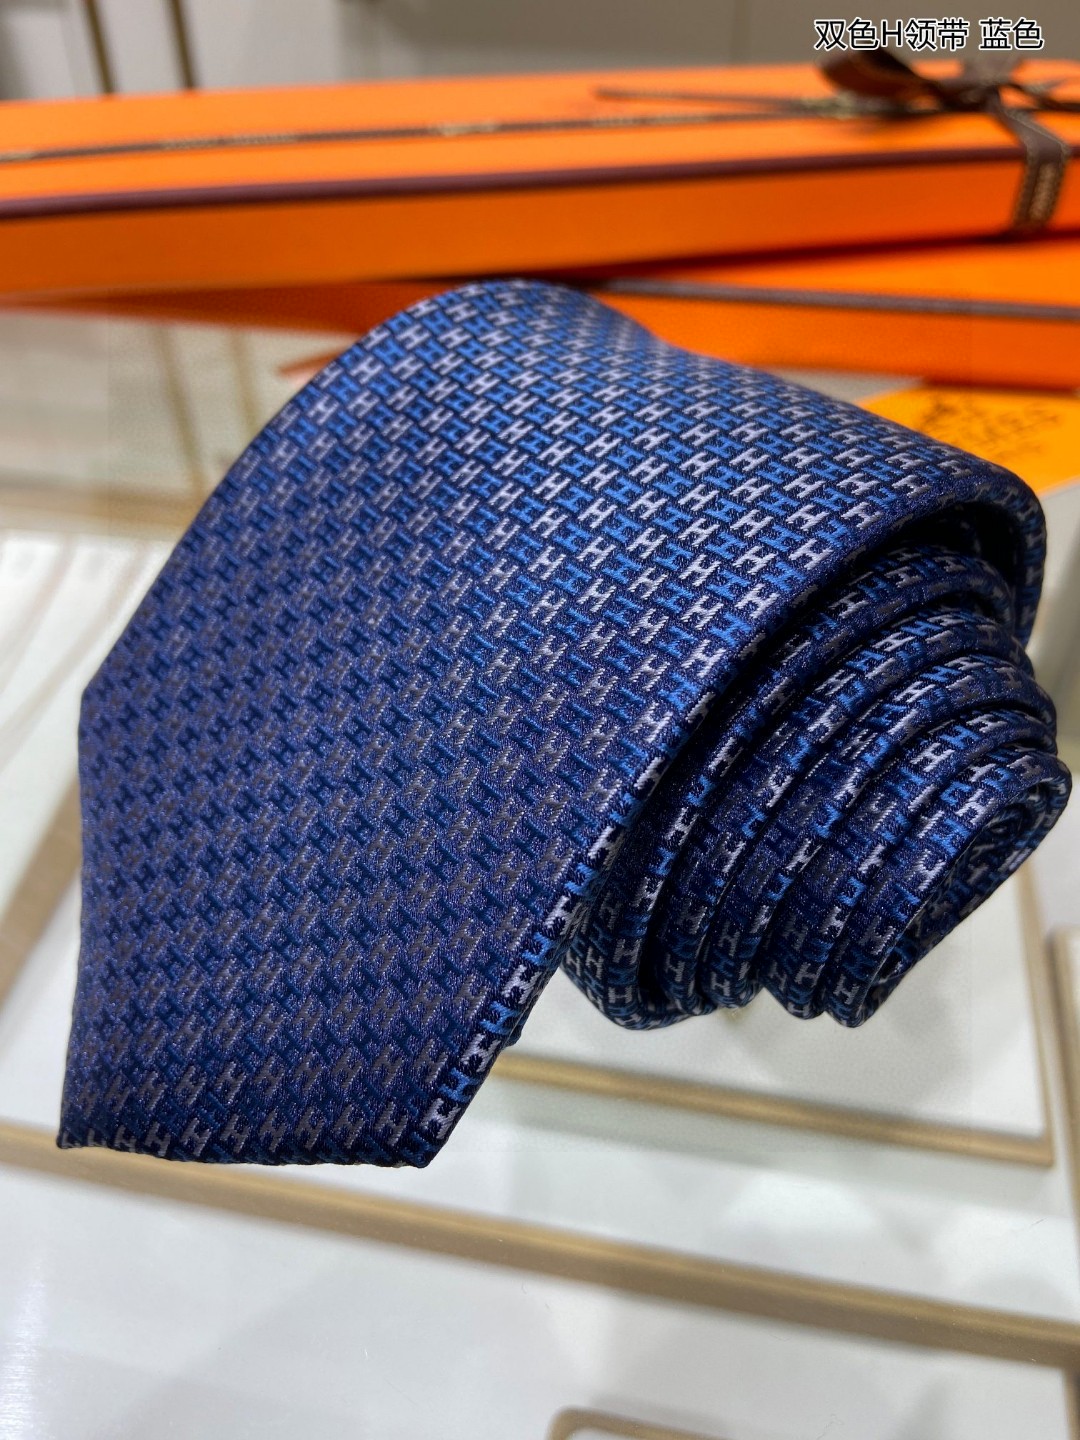 男士新款领带系列双色H领带稀有H家每年都有一千条不同印花的领带面世从最初的多以几何图案表现骑术活动为主到